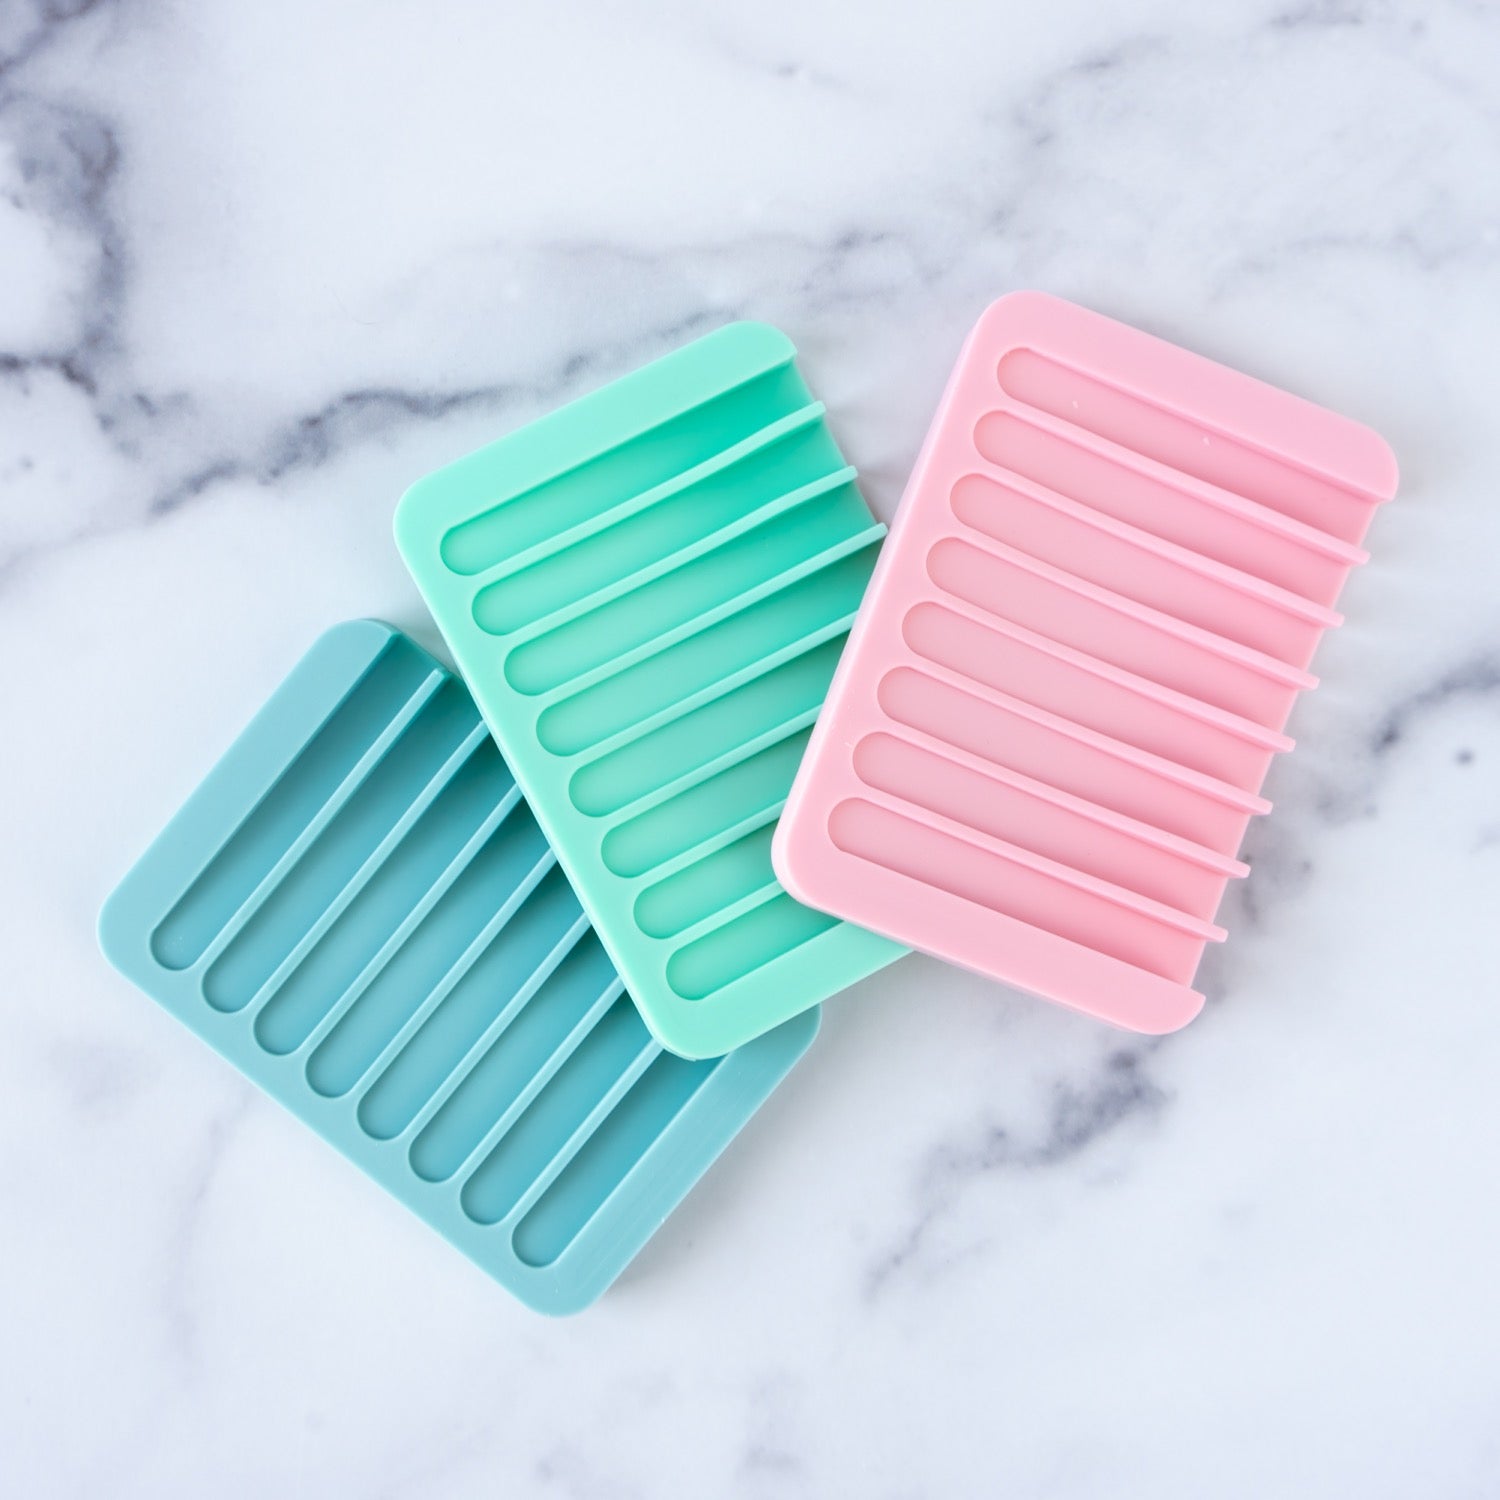 Multicolor Silicone Soap Tray 1Pc - Flexible Silicone Soap Dish